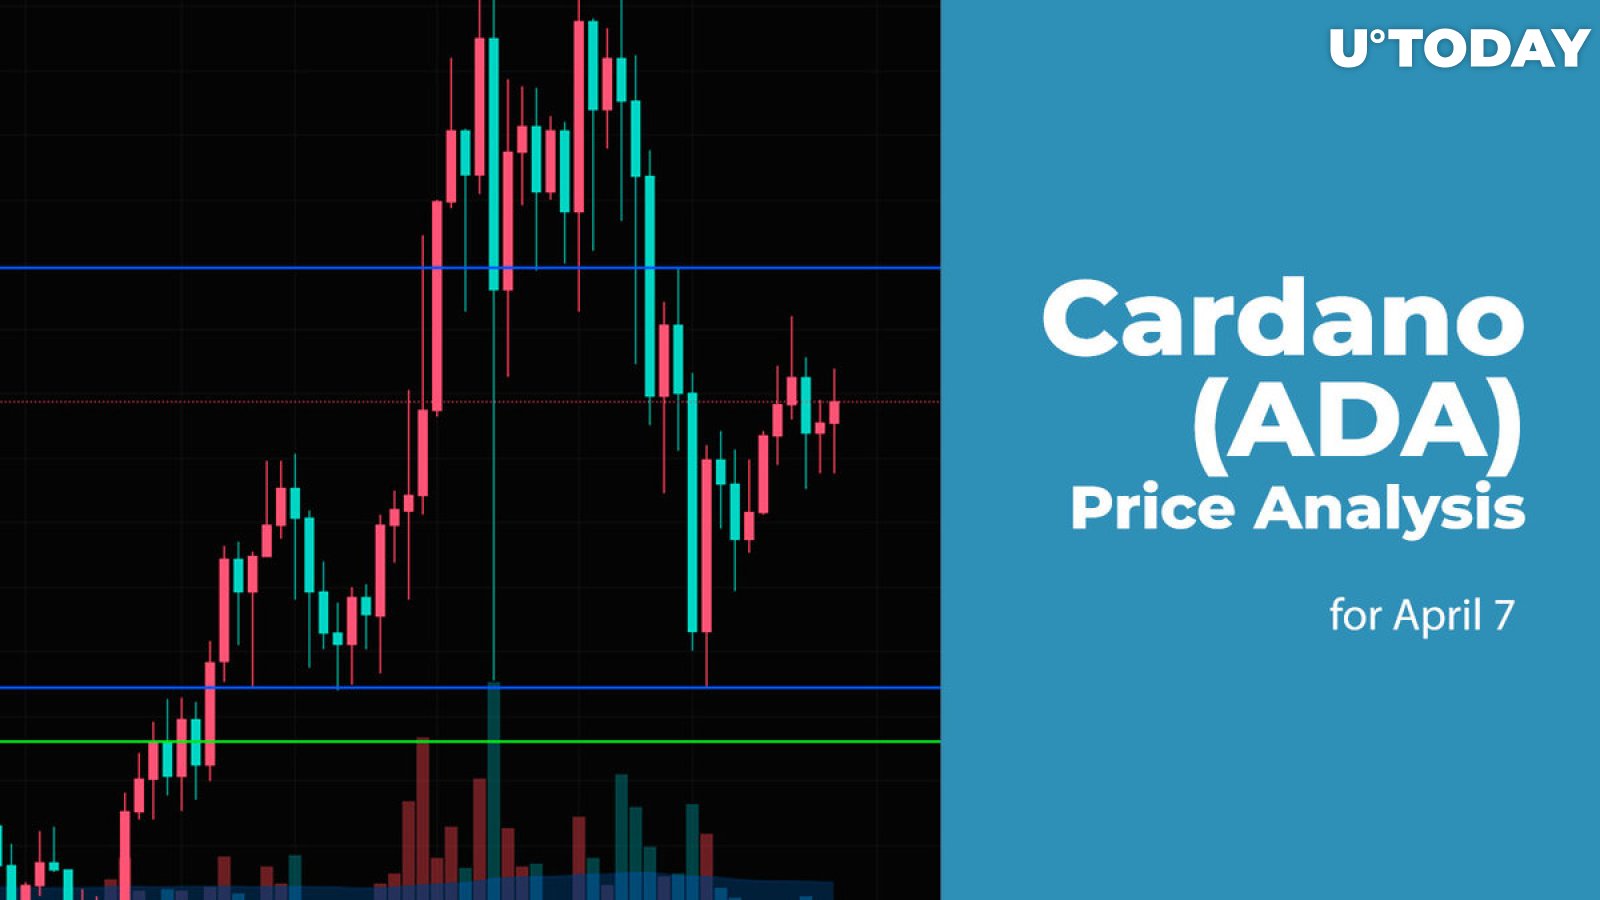 Cardano (ADA) Price Prediction for April 7